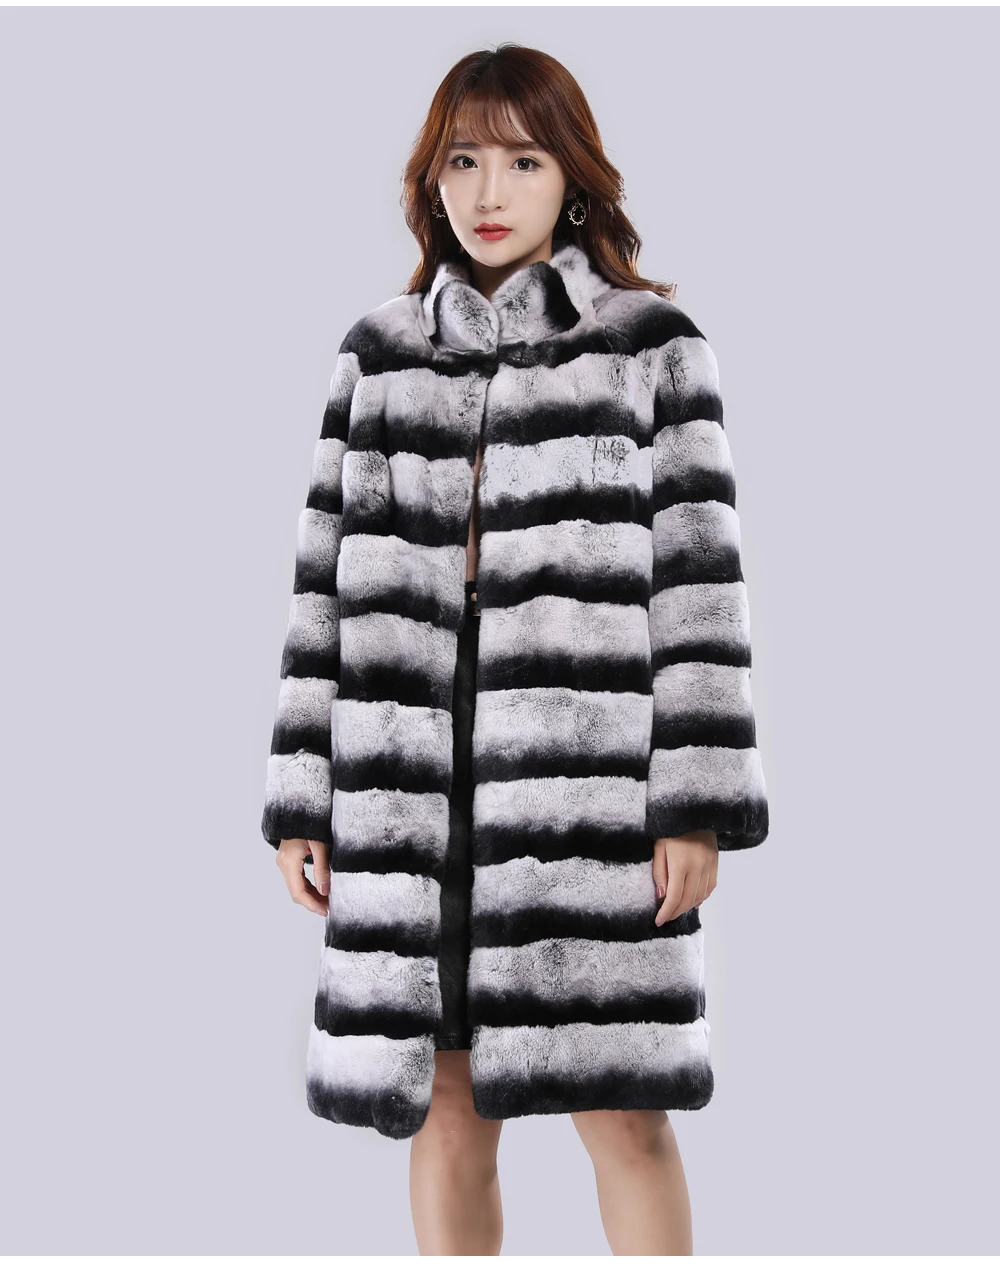 2019 длинная стильная женская куртка из натурального меха Рекс, роскошное пальто из меха кролика Рекс, брендовые меховые пальто высокого